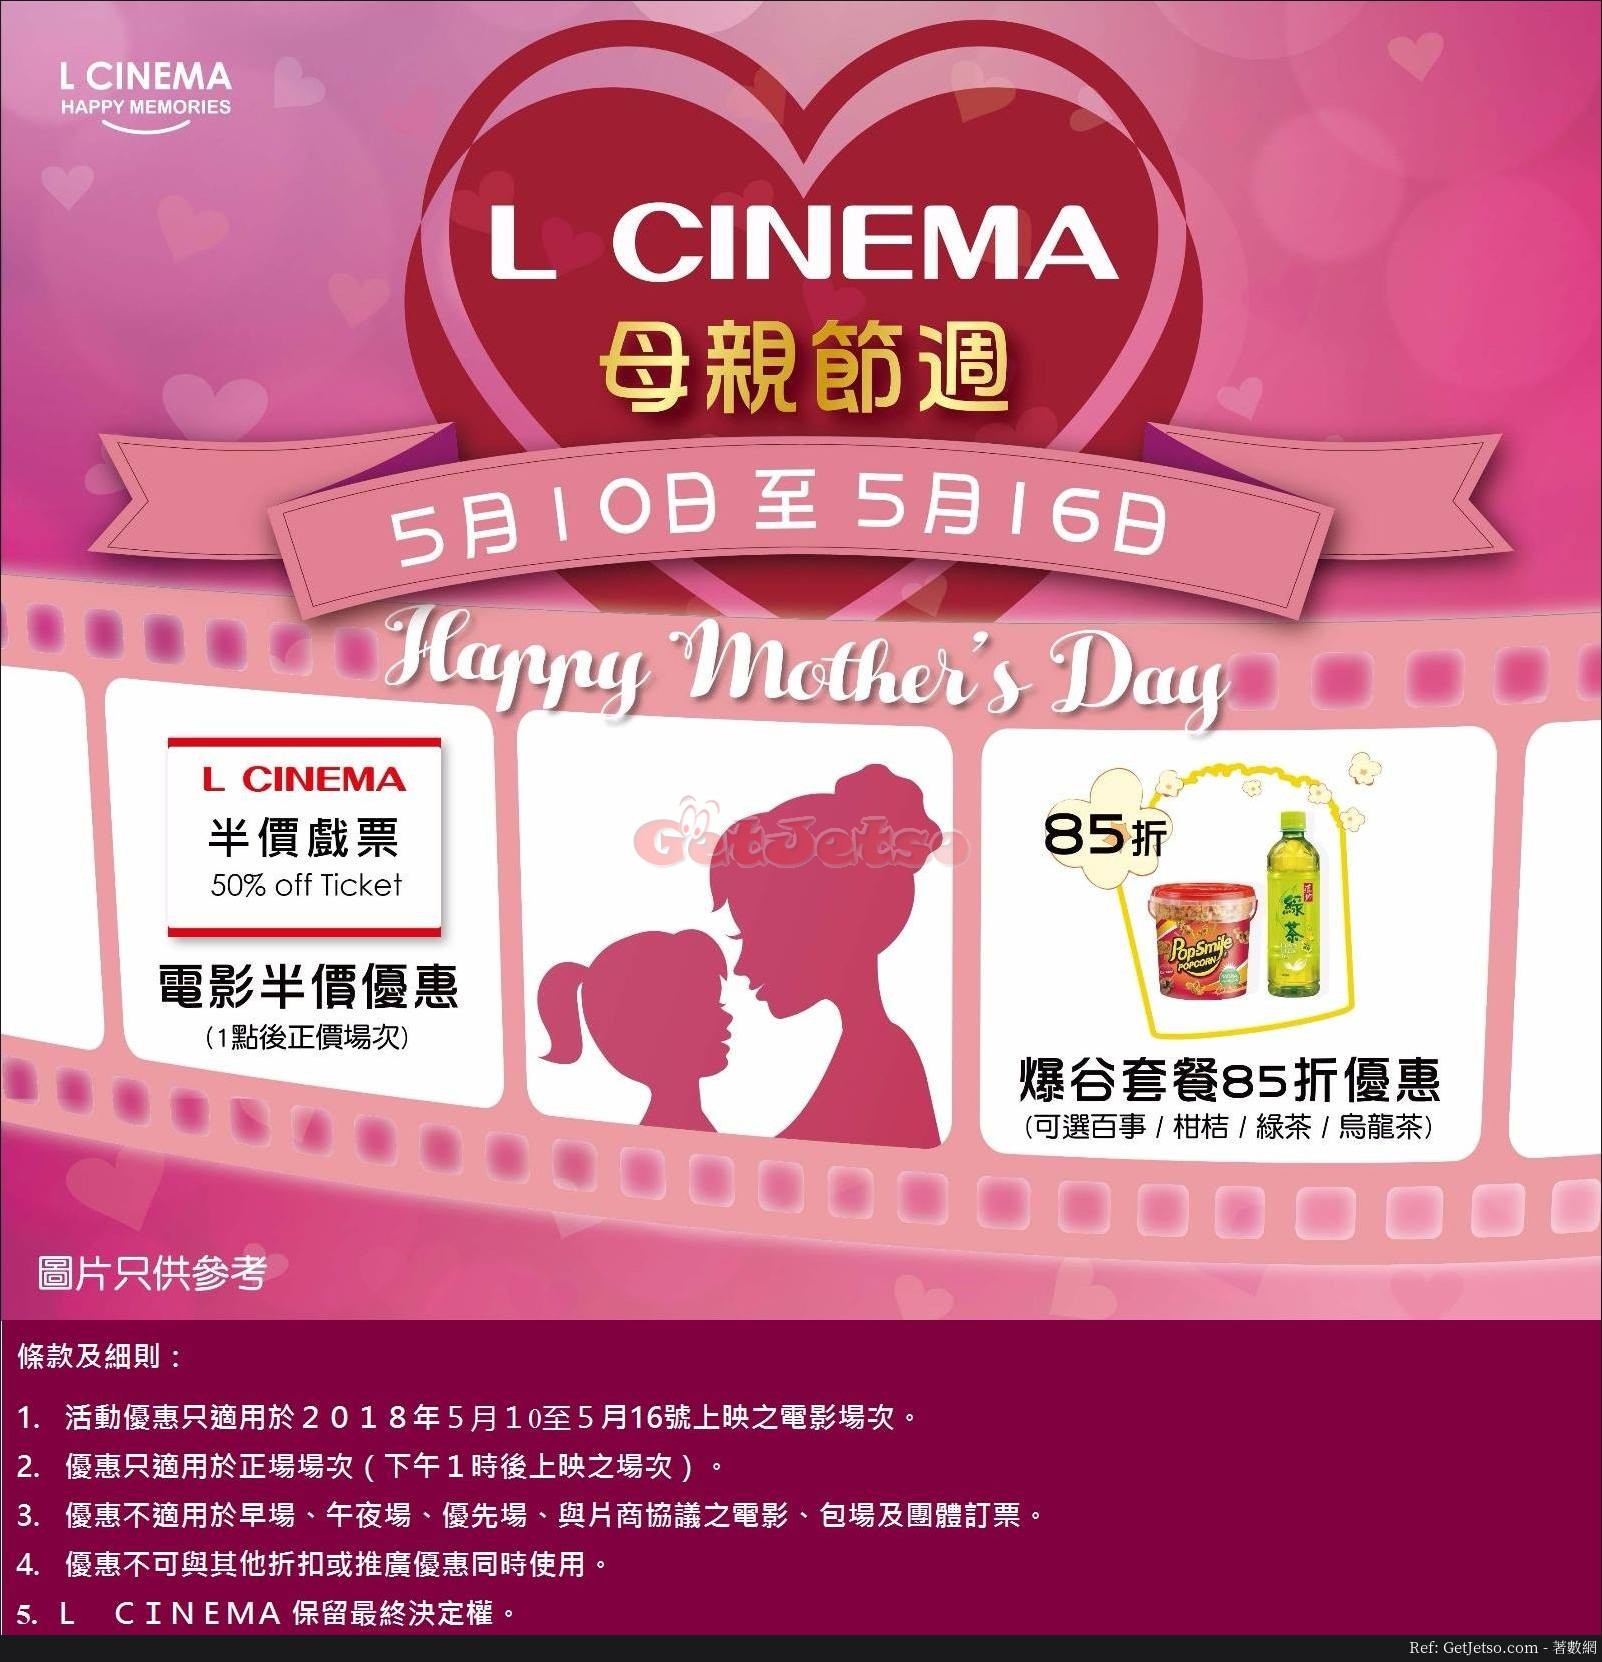 L Cinema 母親節週戲票半價優惠(18年5月10-16日)圖片1